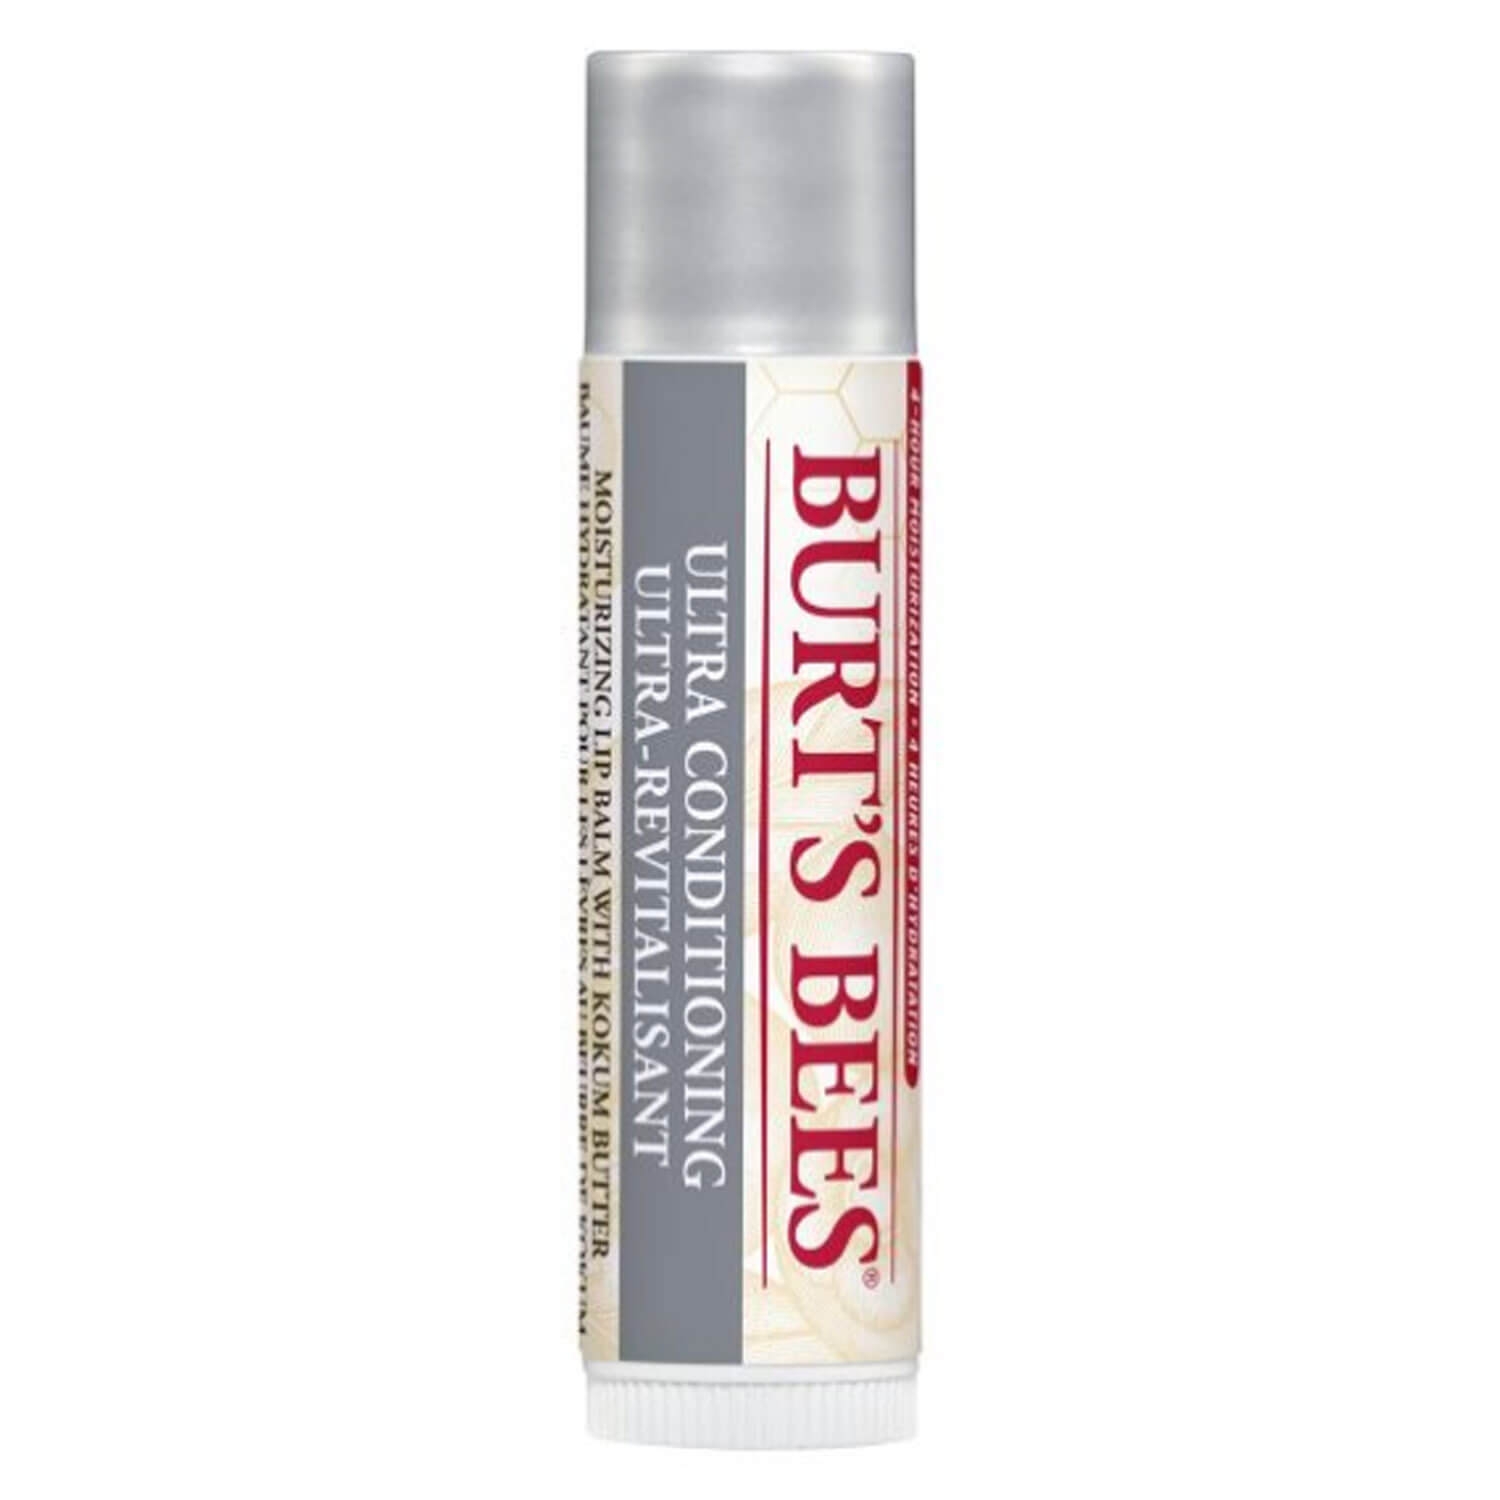 Image du produit de Burt's Bees - Lip Balm Ultra Conditioning Kokum Butter